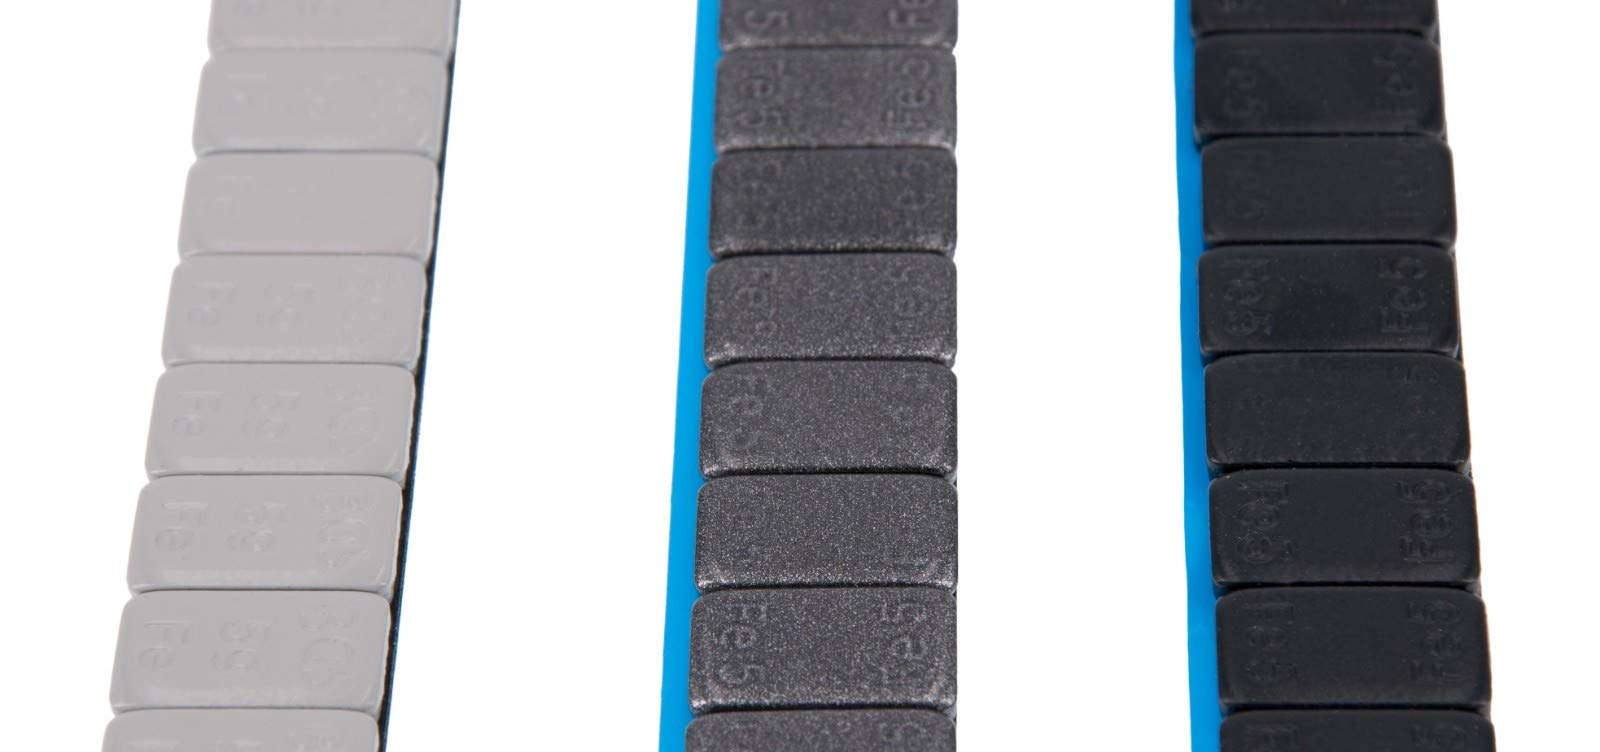 Levando 7X Auswuchtgewichte SCHWARZ & GRAU 420g Klebegewichte Stahlgewichte Kleberiegel 60g mit ABRISSKANTE verzinkt & kunststoffbeschichtet 3 Farben BGS, Farbe: anthrazit-grau von Levando